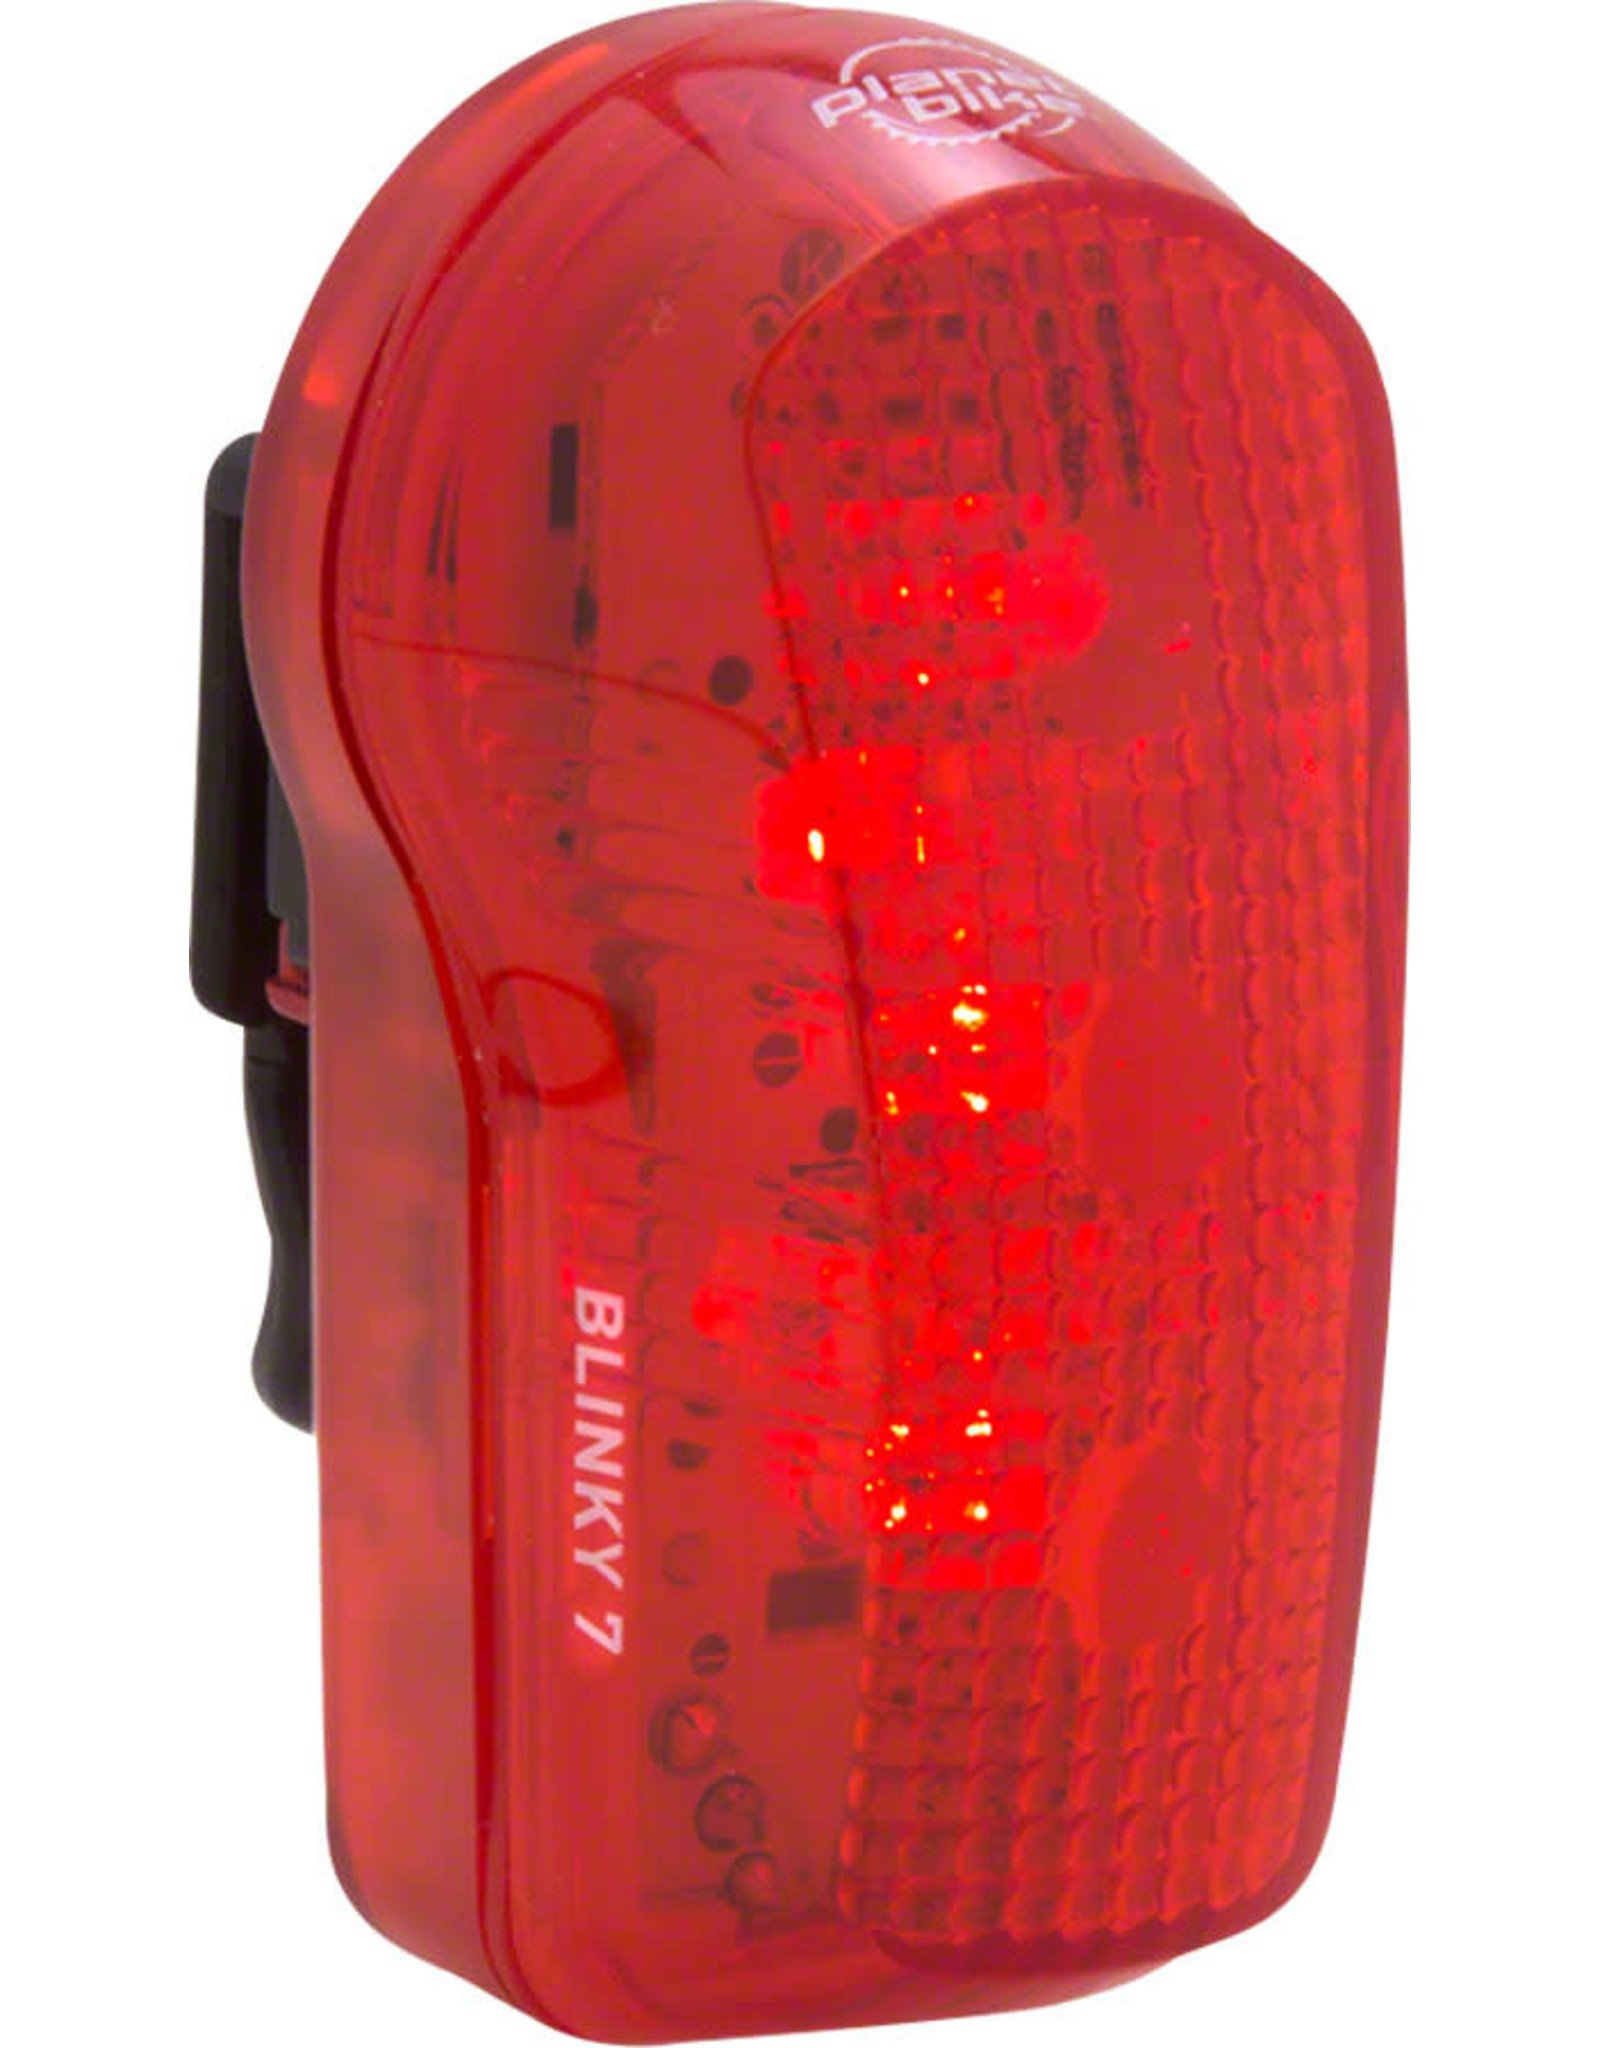 Planet Bike Planet Bike Blinky 7 LED Taillight - Red/Black